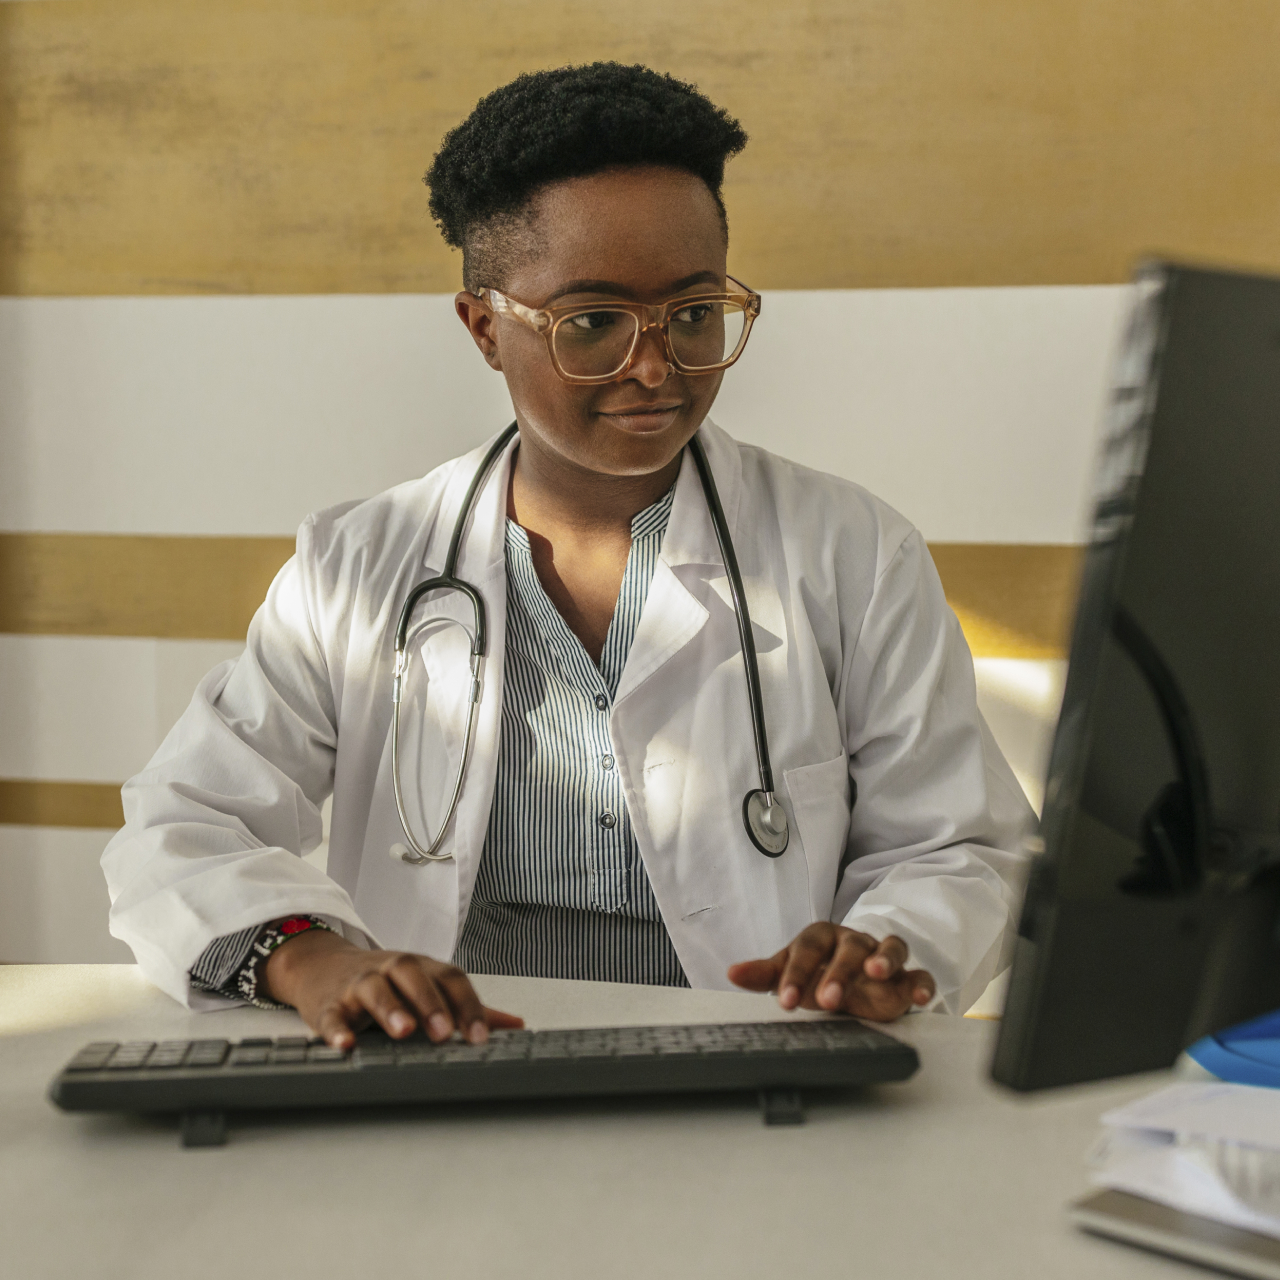 Médecin en blouse blanche avec un stéthoscope autour du cou, assise à un bureau devant un ordinateur